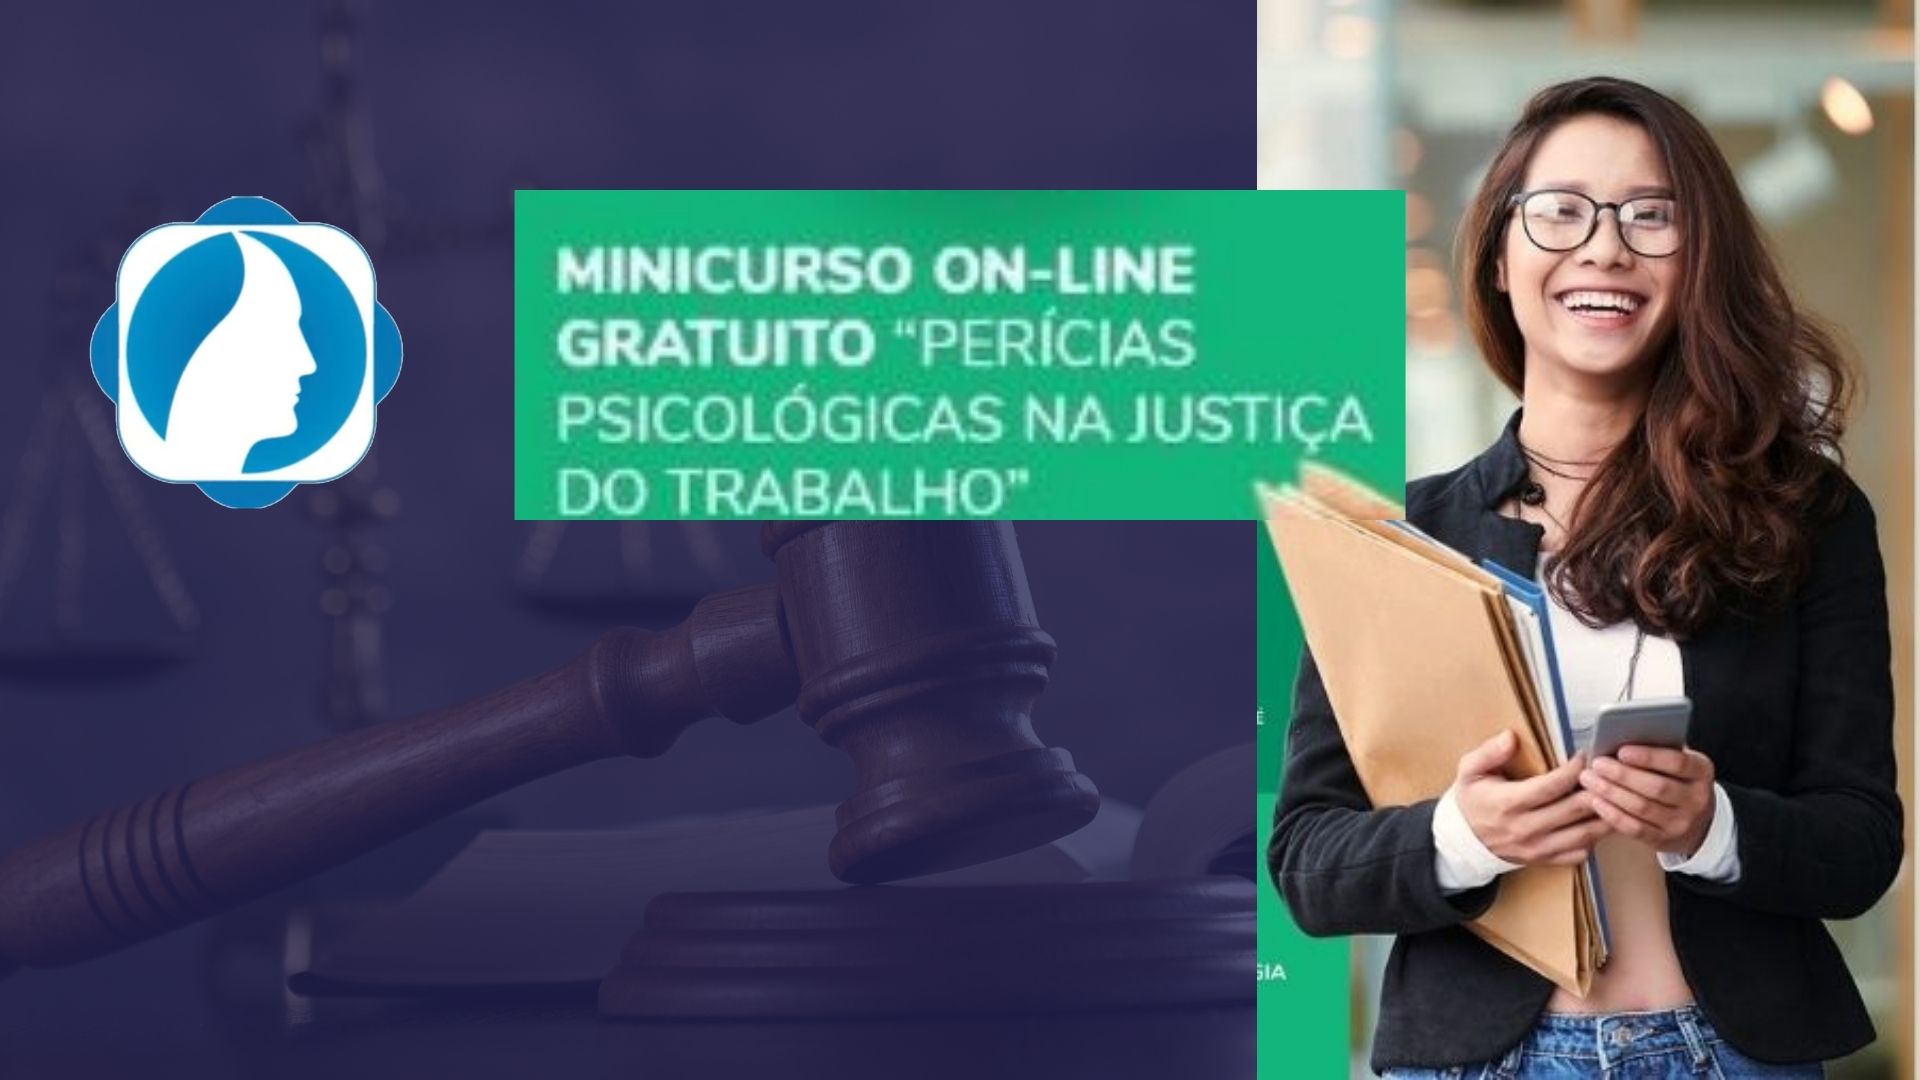 MINICURSO PERÍCIAS PSICOLÓGICAS NA JUSTIÇA DO TRABALHO